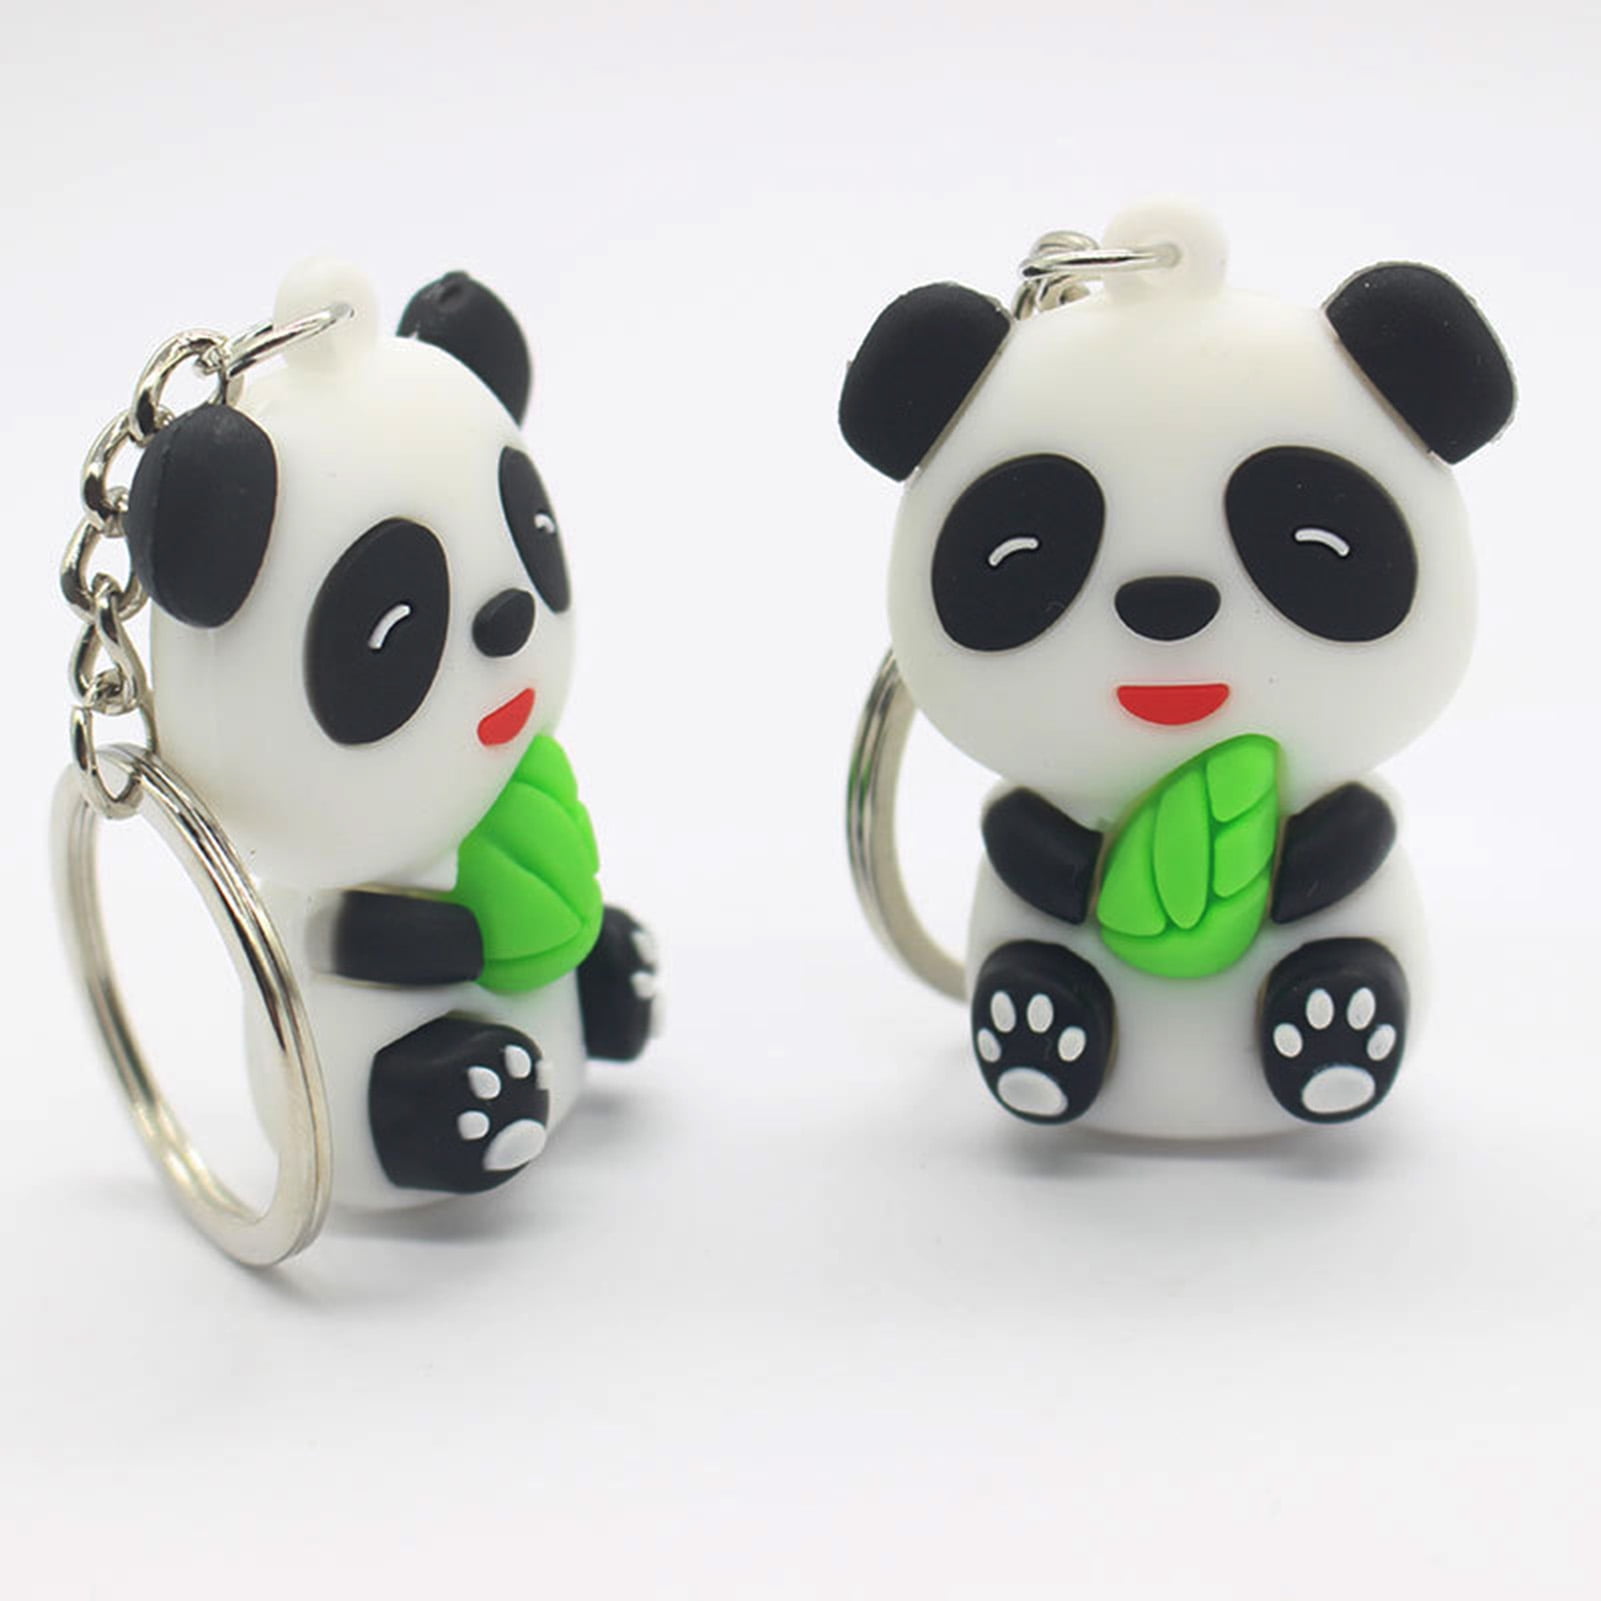 Cute metallic panda key chain / charm for keys & bags at Rs 175.00, Metal  Key Chain